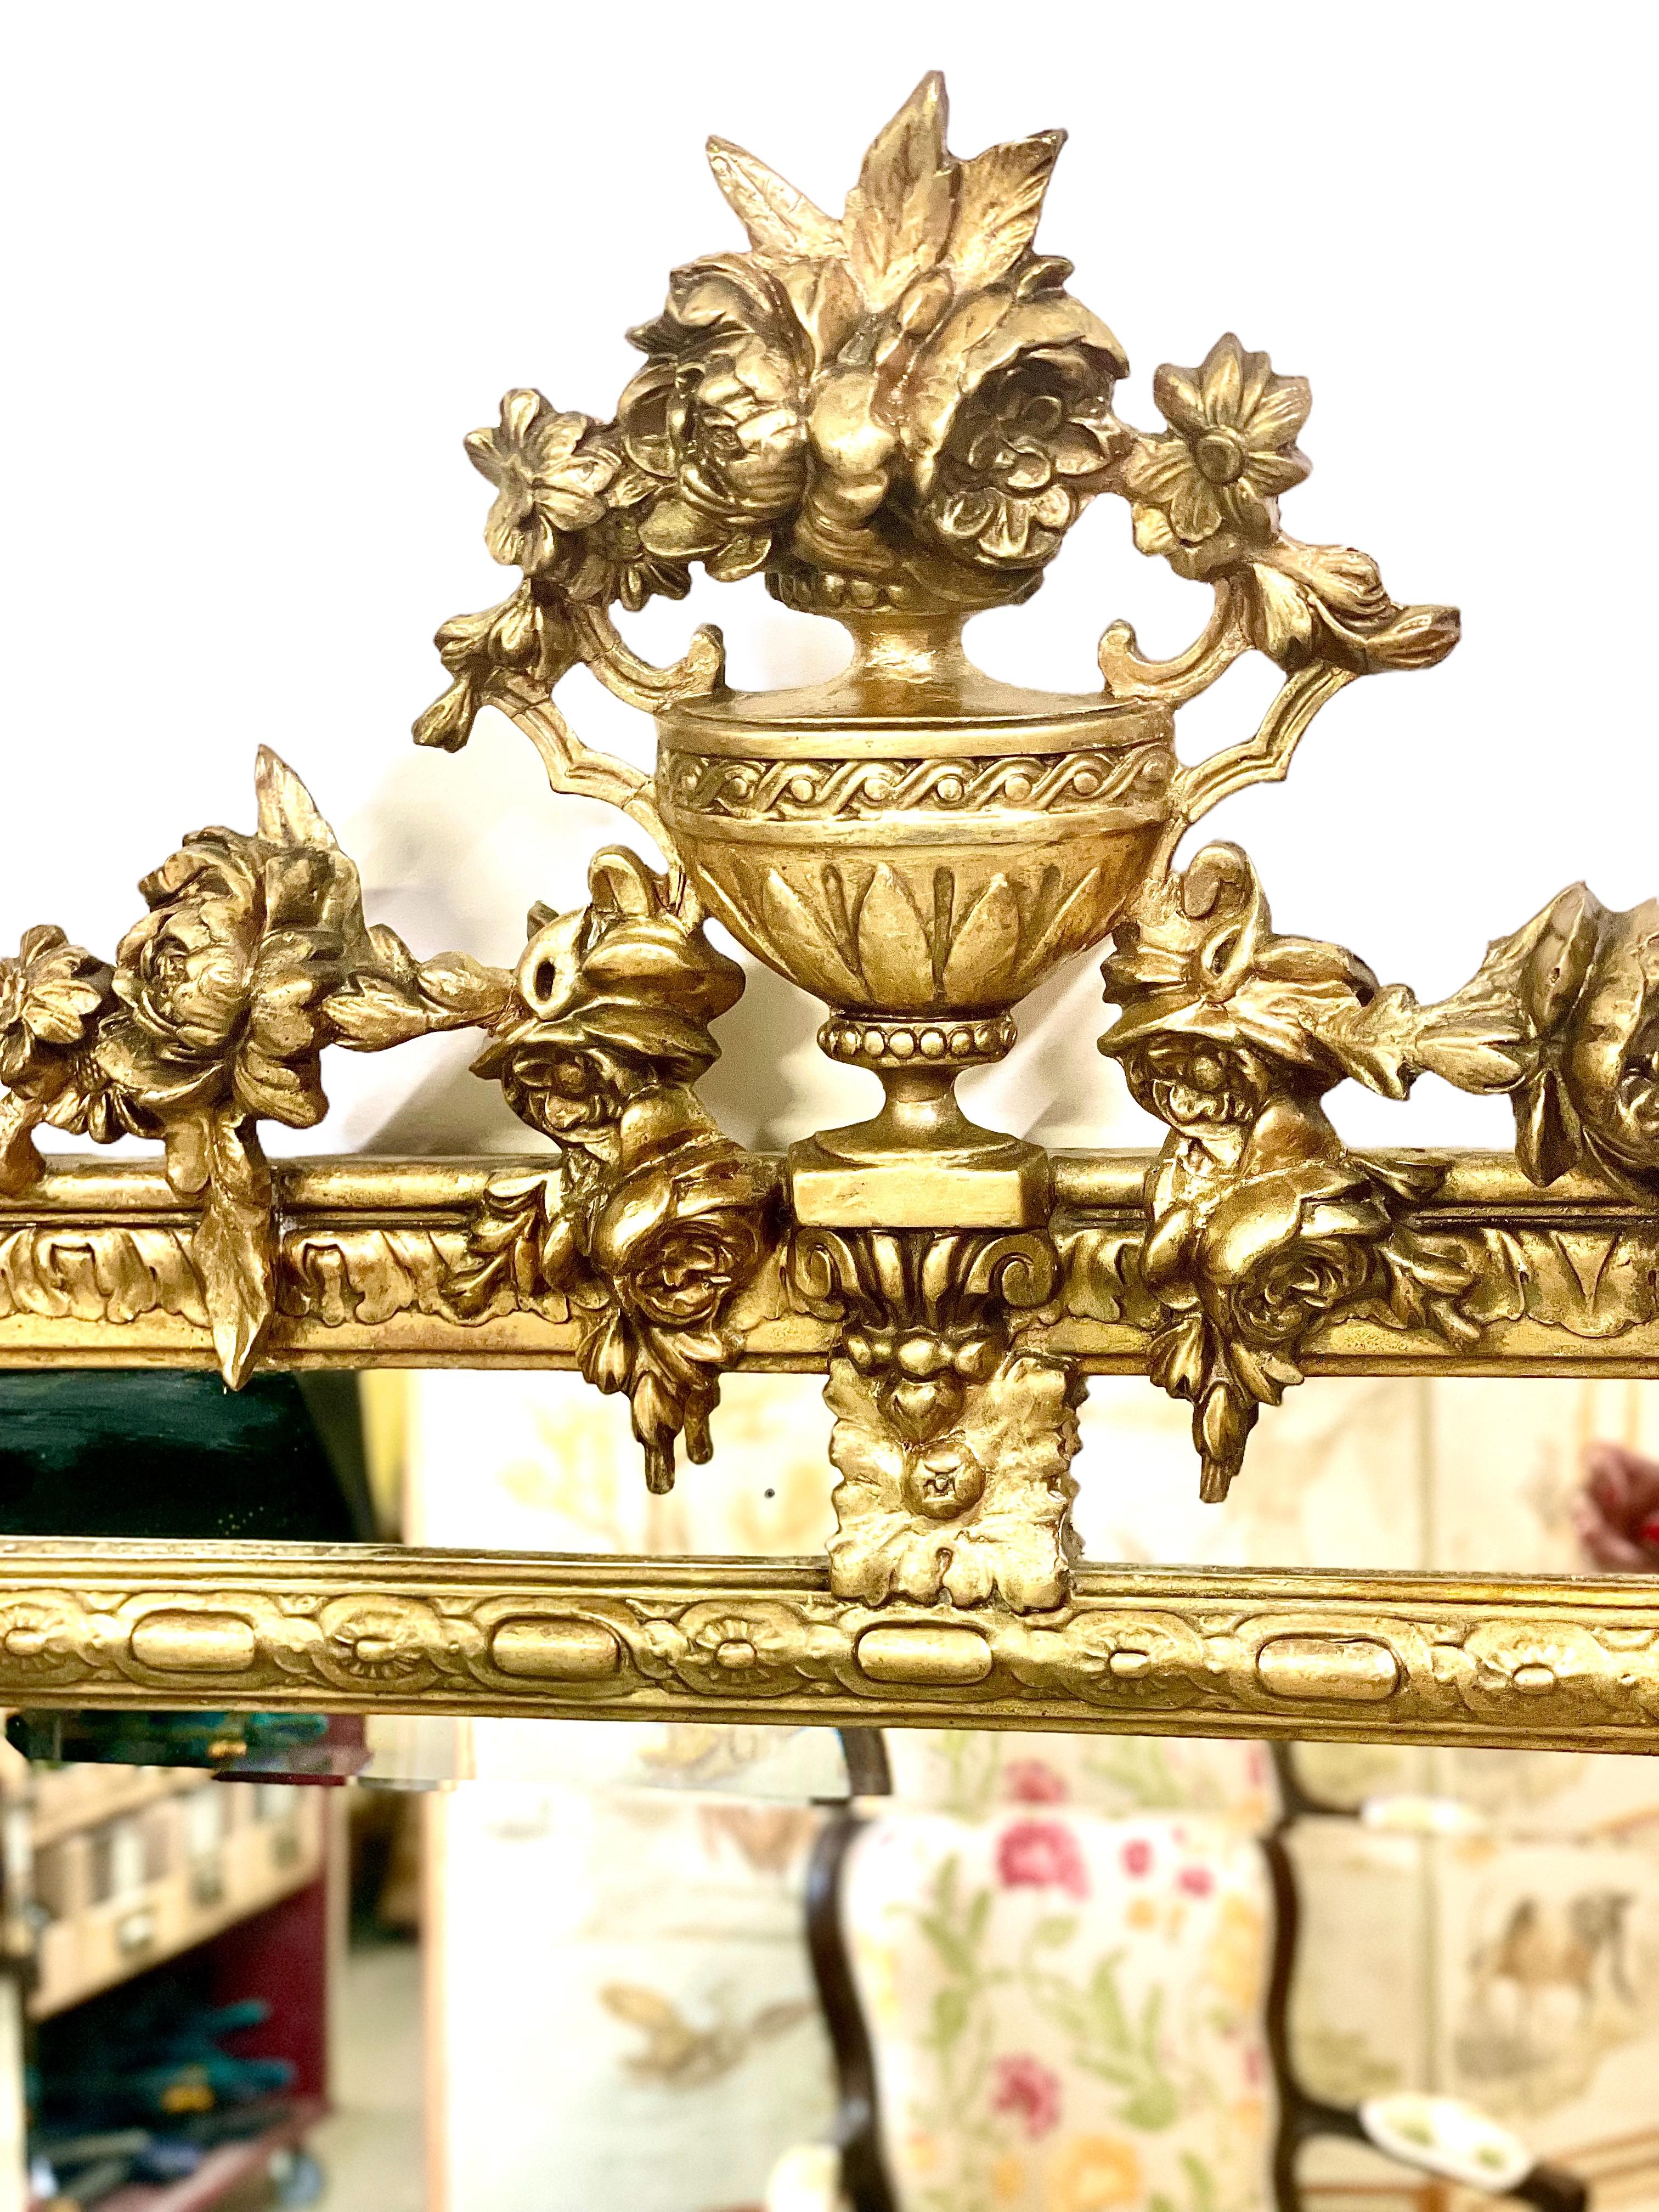 Ein außergewöhnlich feiner Napoleon III parclose Spiegel, mit seiner ursprünglichen abgeschrägten Quecksilberglas Spiegelplatte. Das Design ist äußerst dekorativ: Das überdimensionale Wappen zeigt eine schöne Urne, die mit Blumen- und